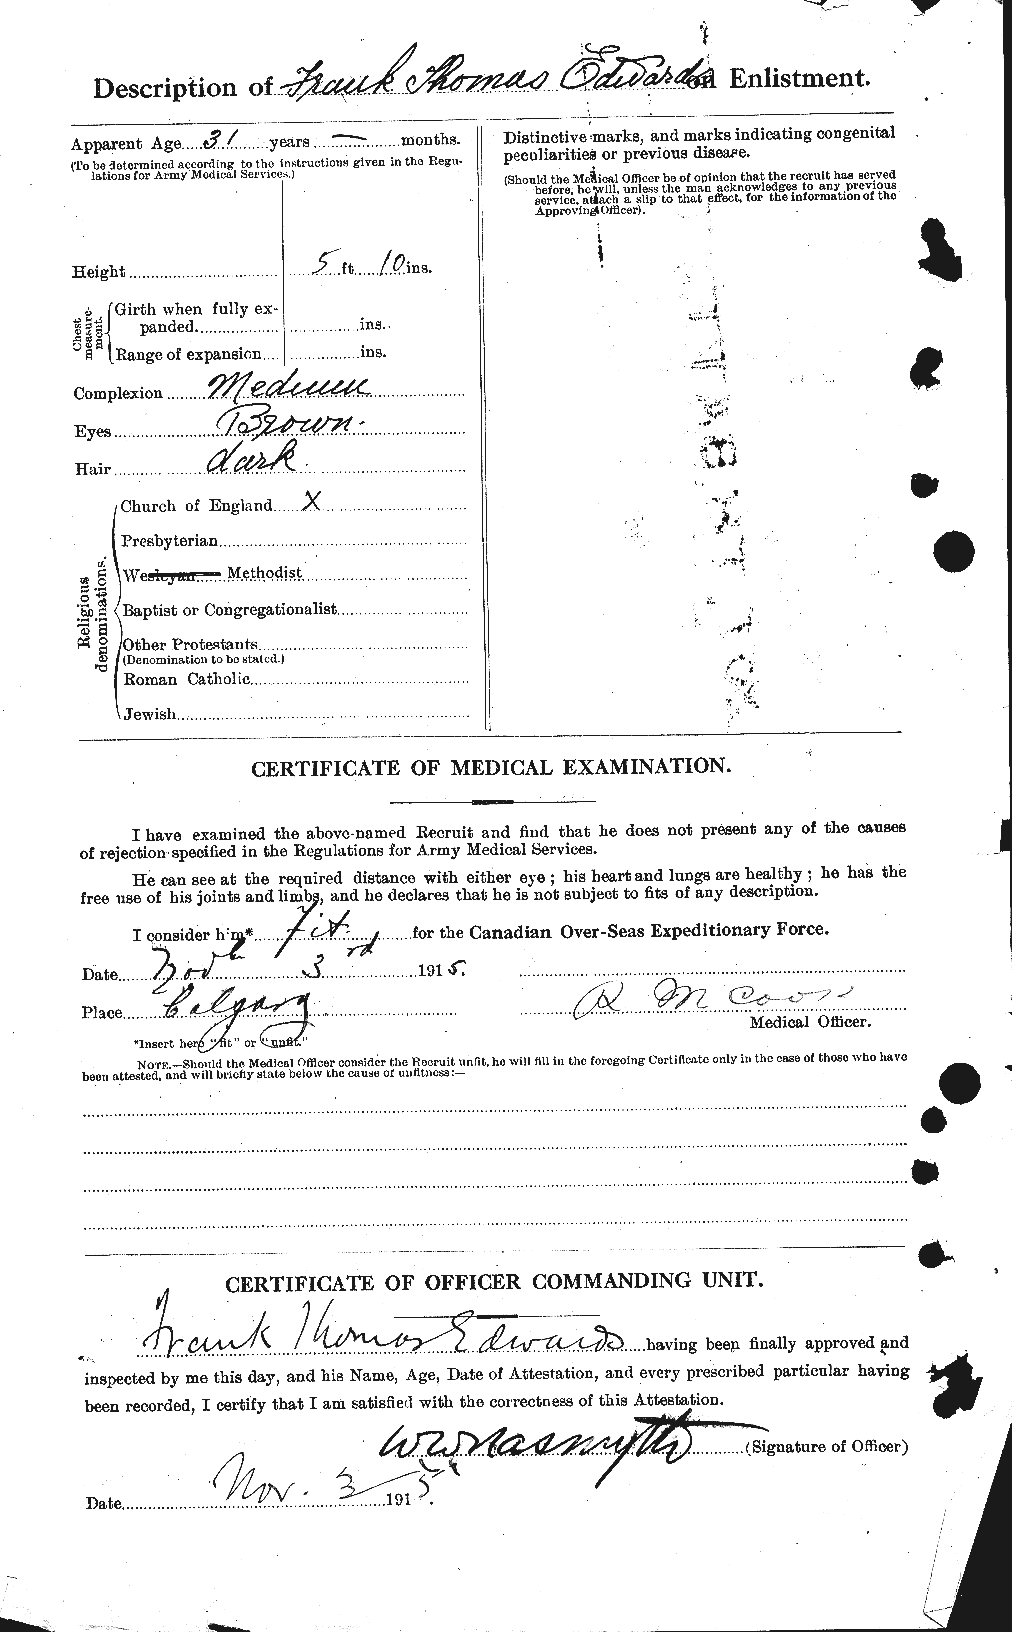 Dossiers du Personnel de la Première Guerre mondiale - CEC 309056b